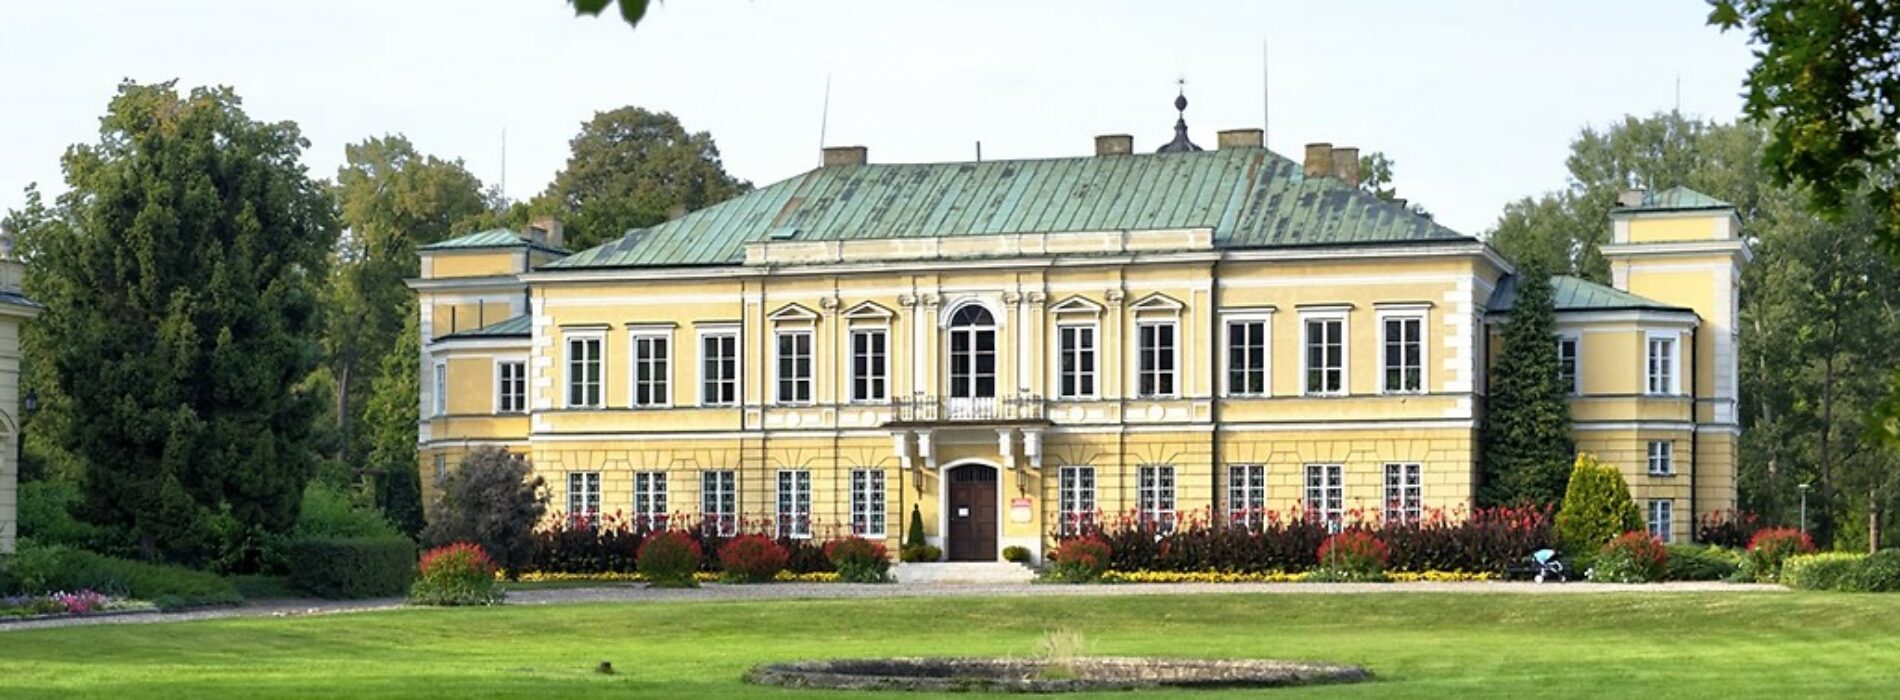 44 SKOIW: Zwiedzanie Pałacu Prymasowskiego